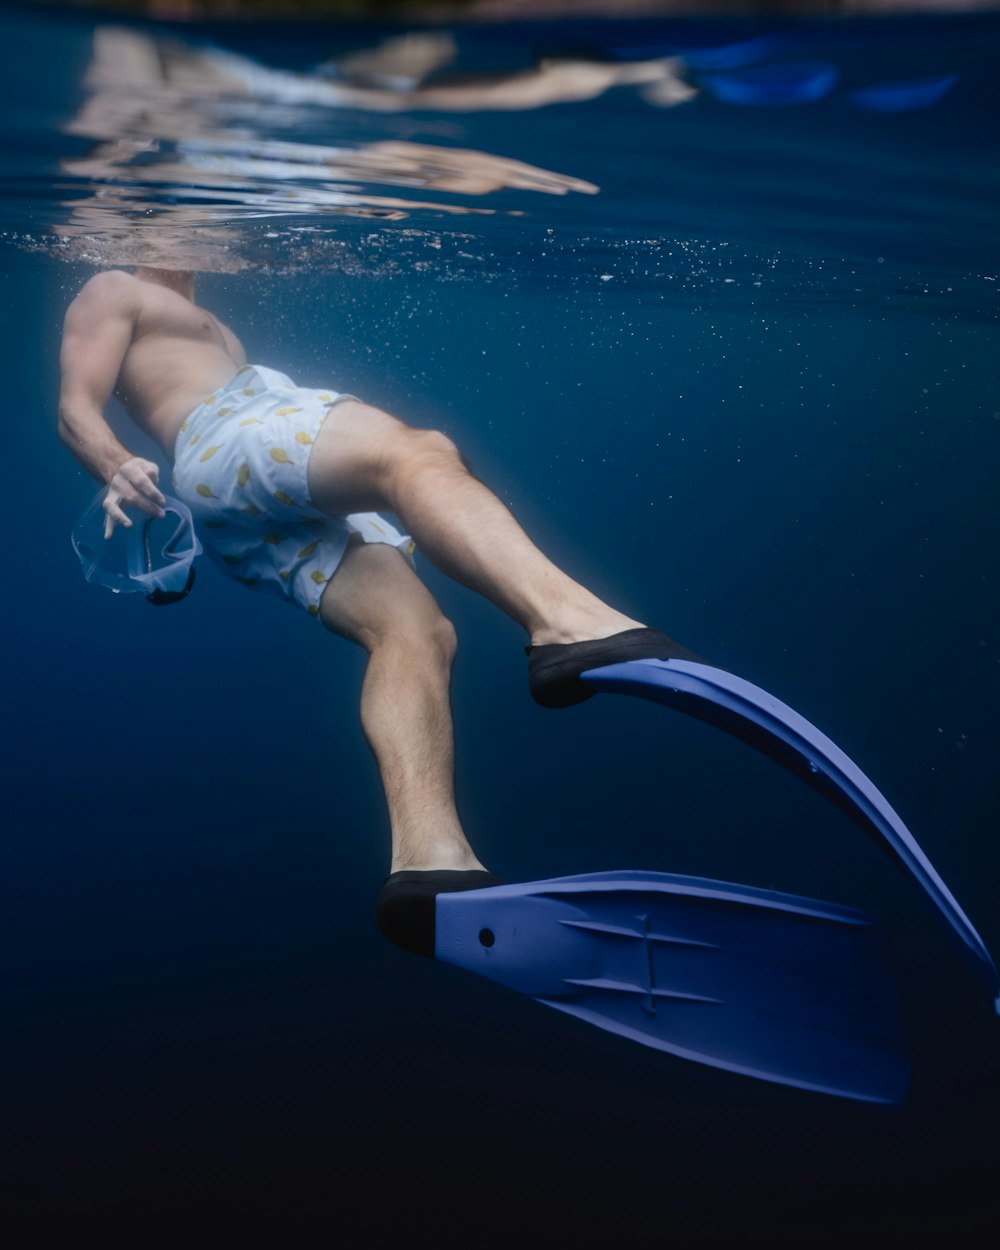 青い足ひれを身に着けた男の水中写真